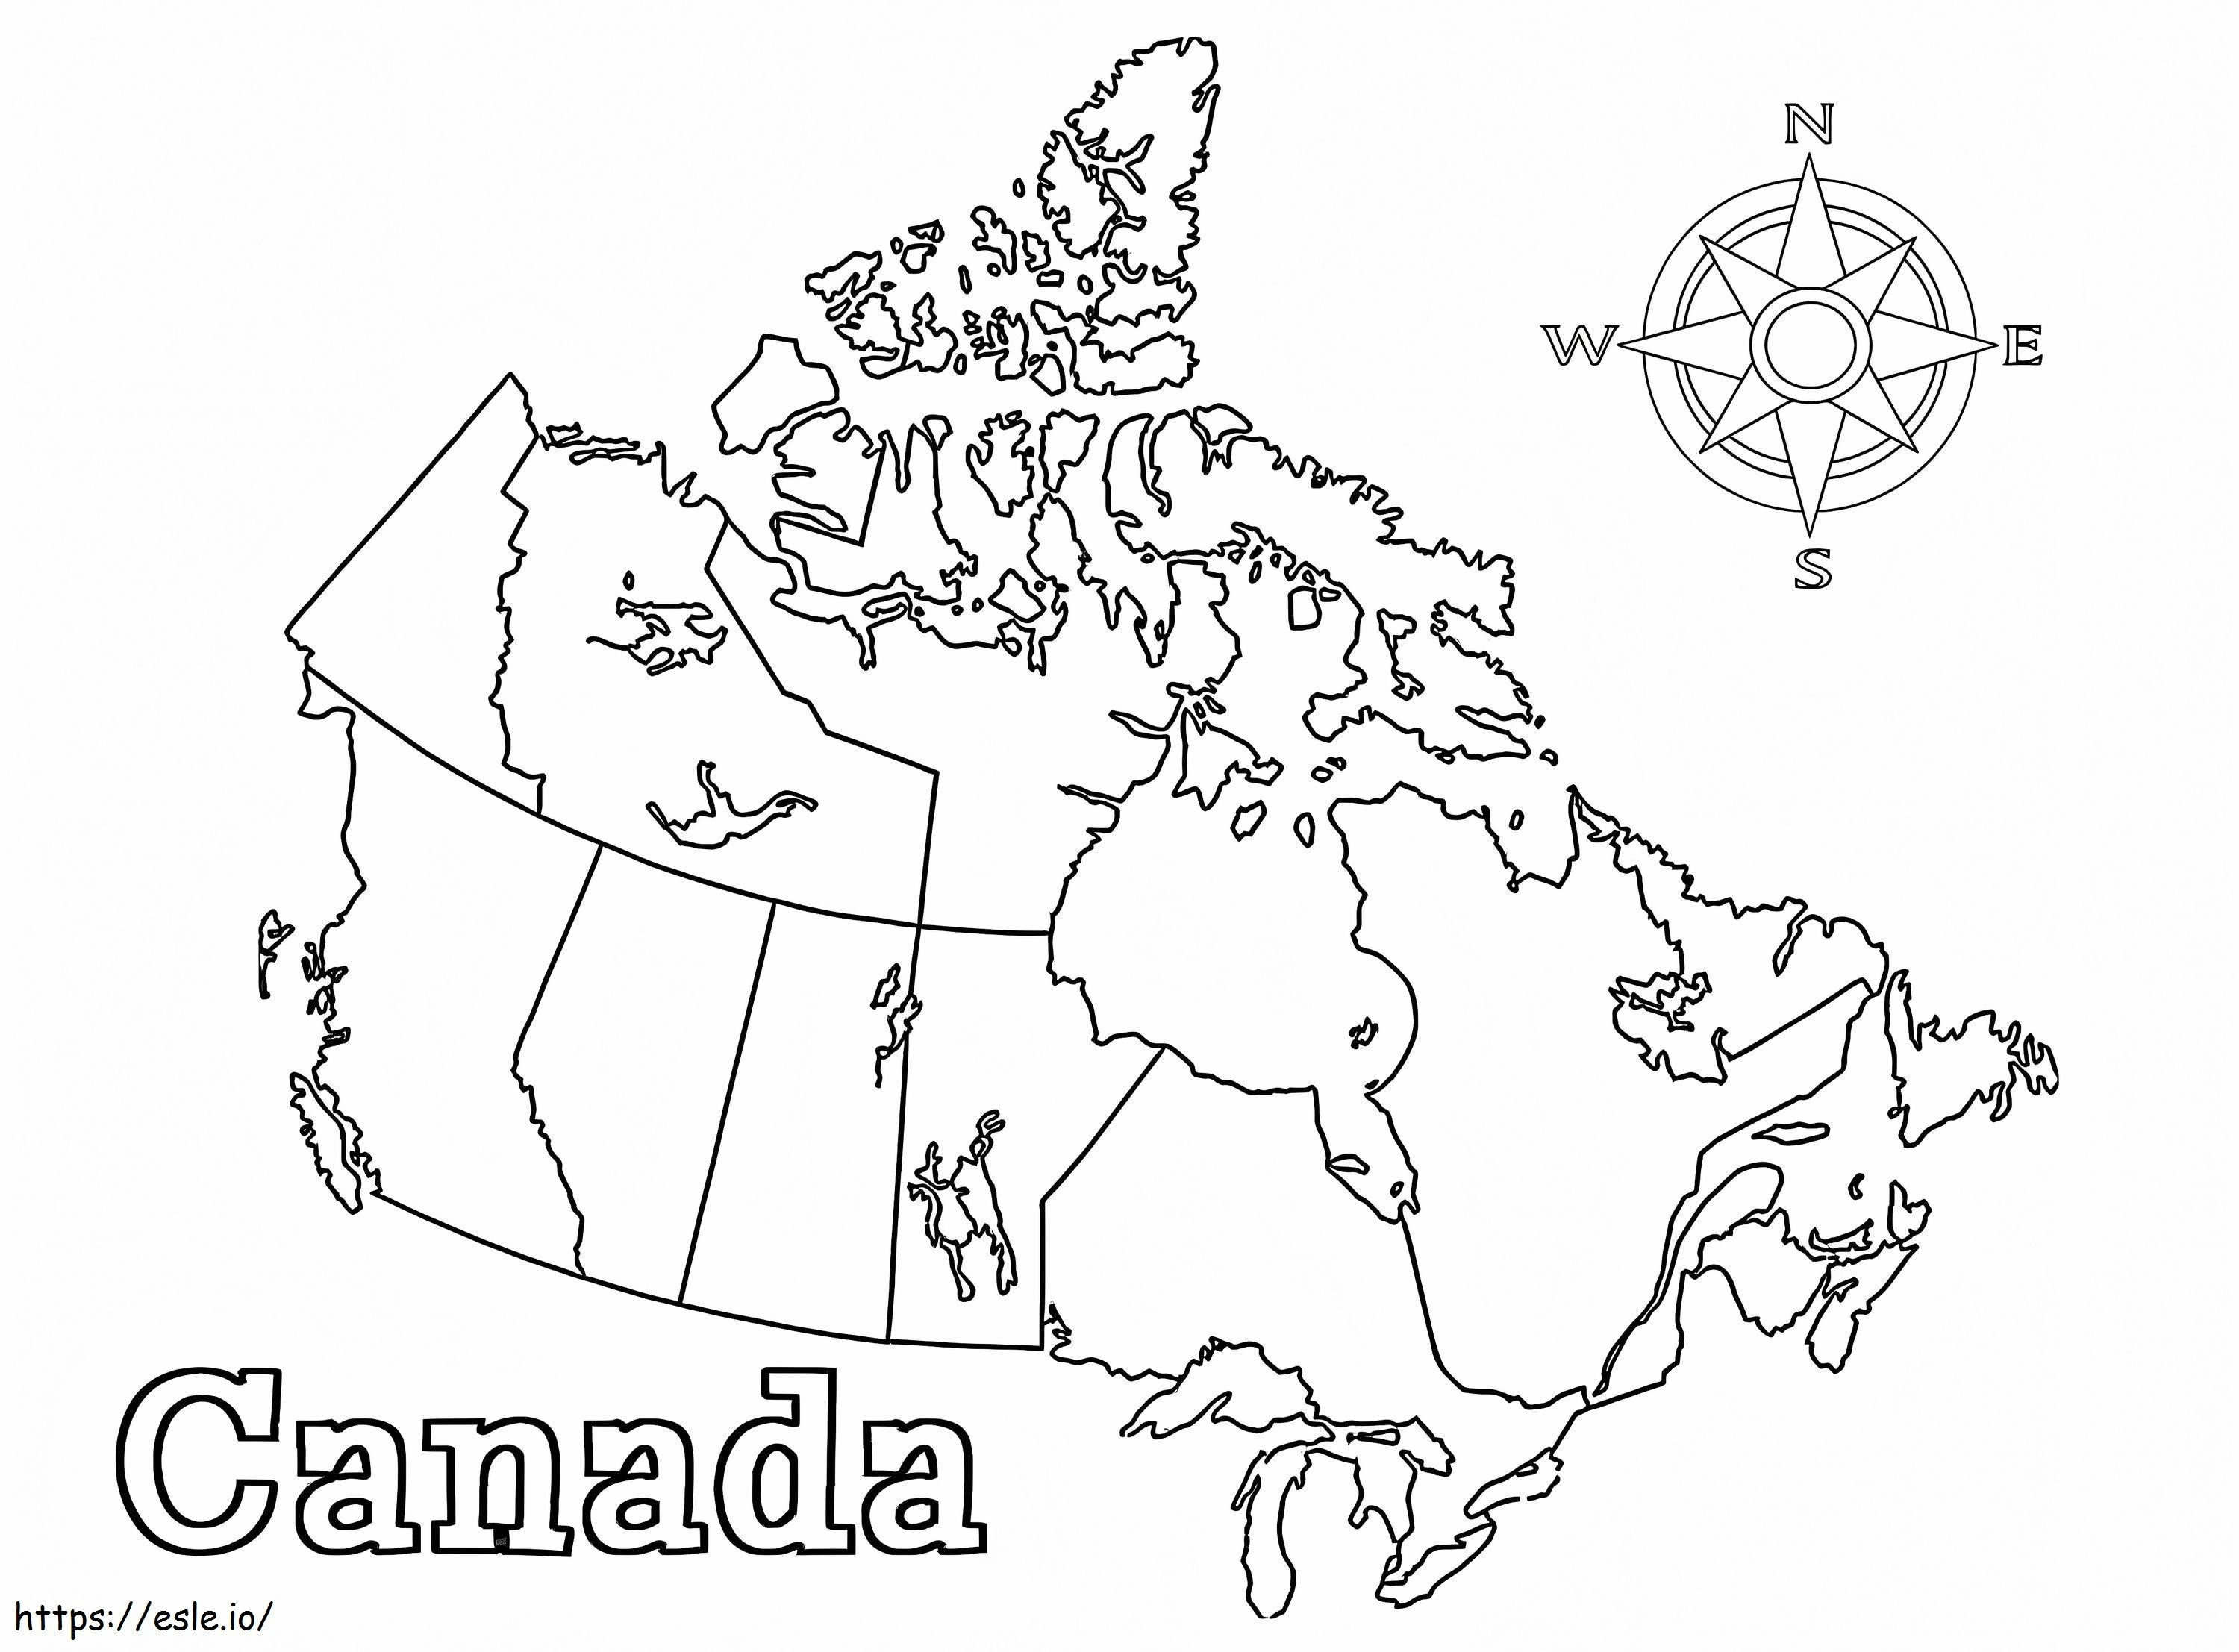 De Canadese kaart kleurplaat kleurplaat